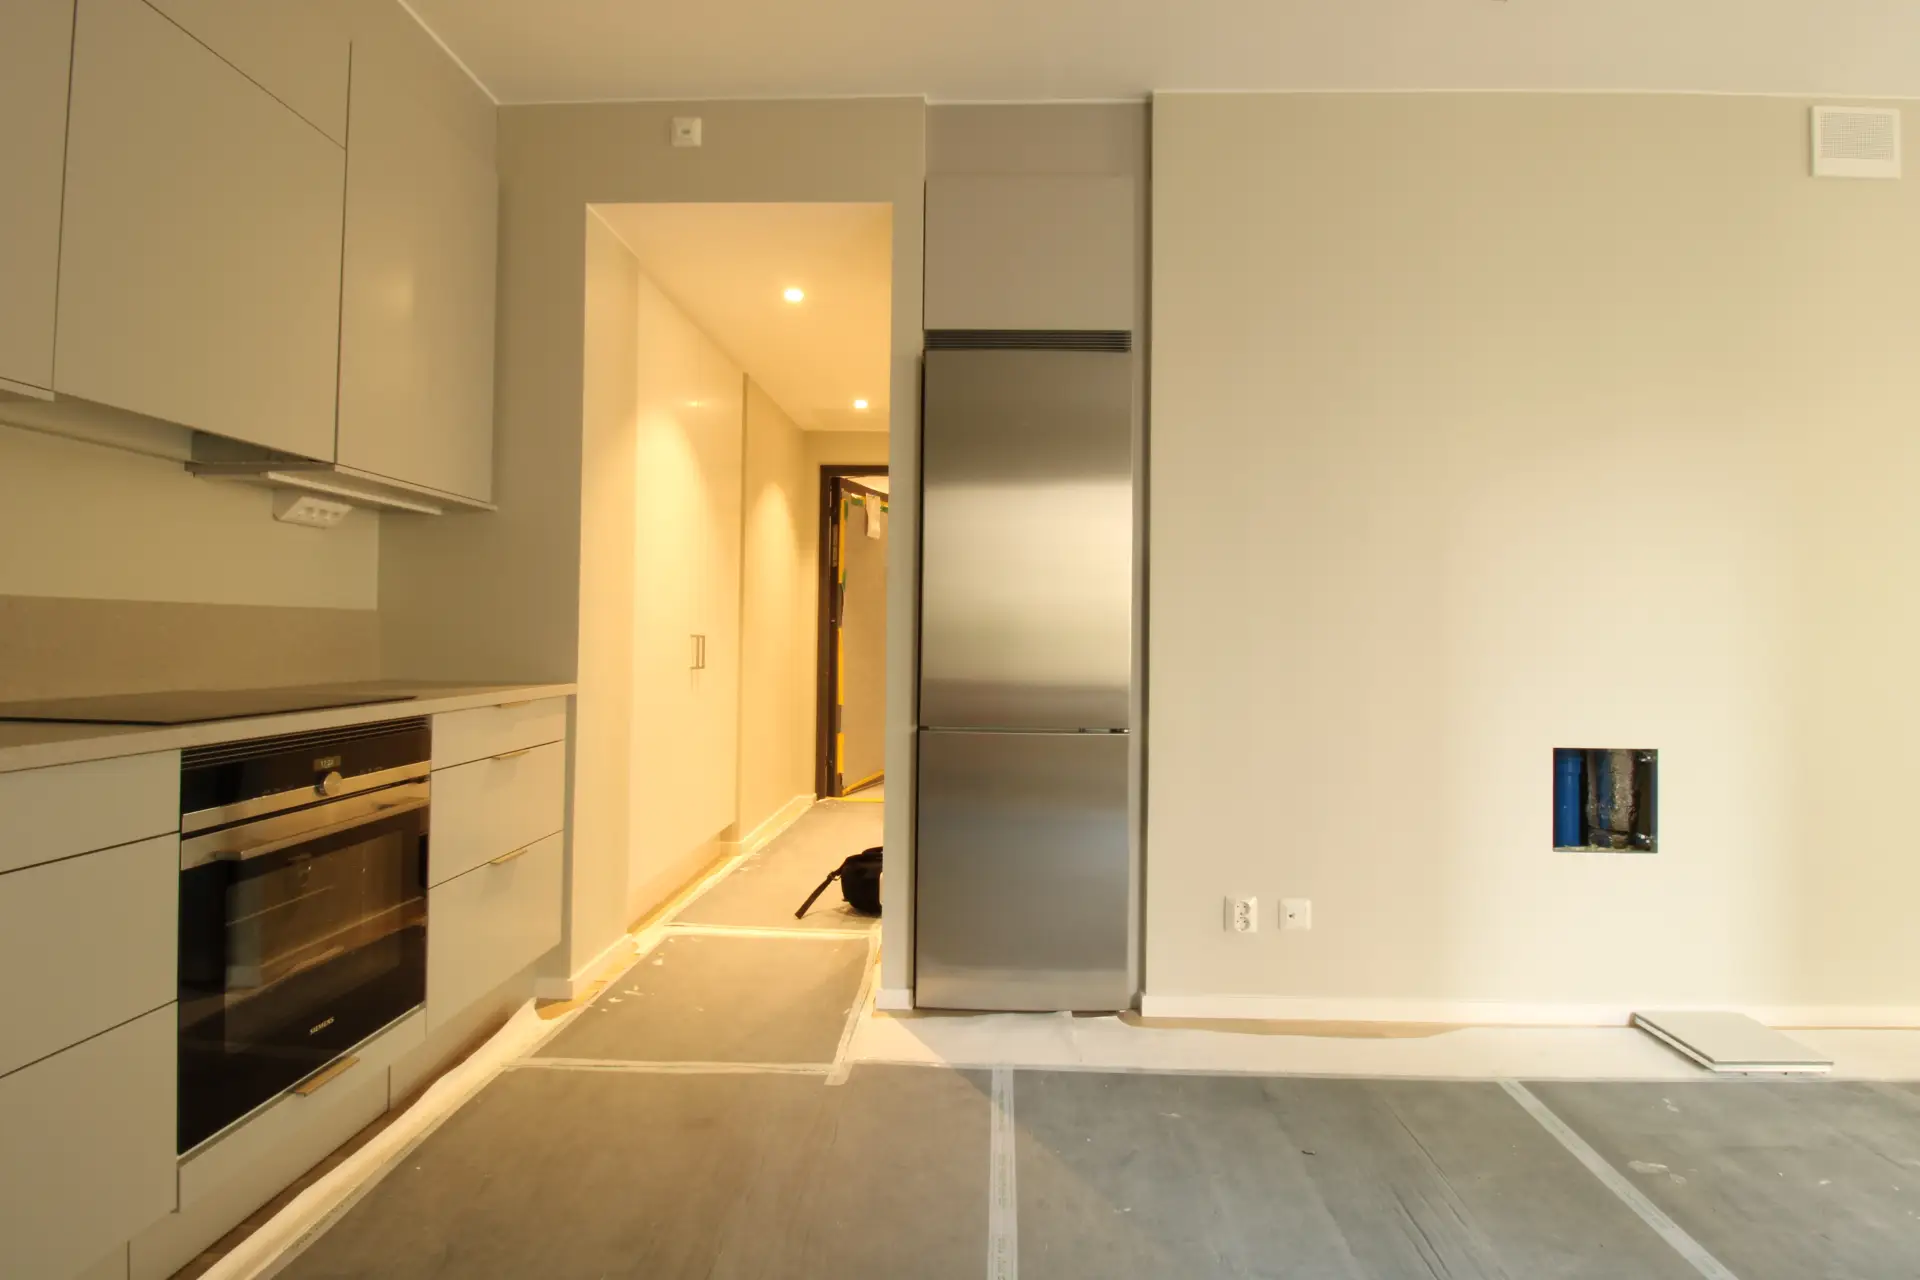 Ett kök under uppbyggnad med ljusgråa luckor, en ugn och ett kylskåp, med skyddande överdrag på golvet.